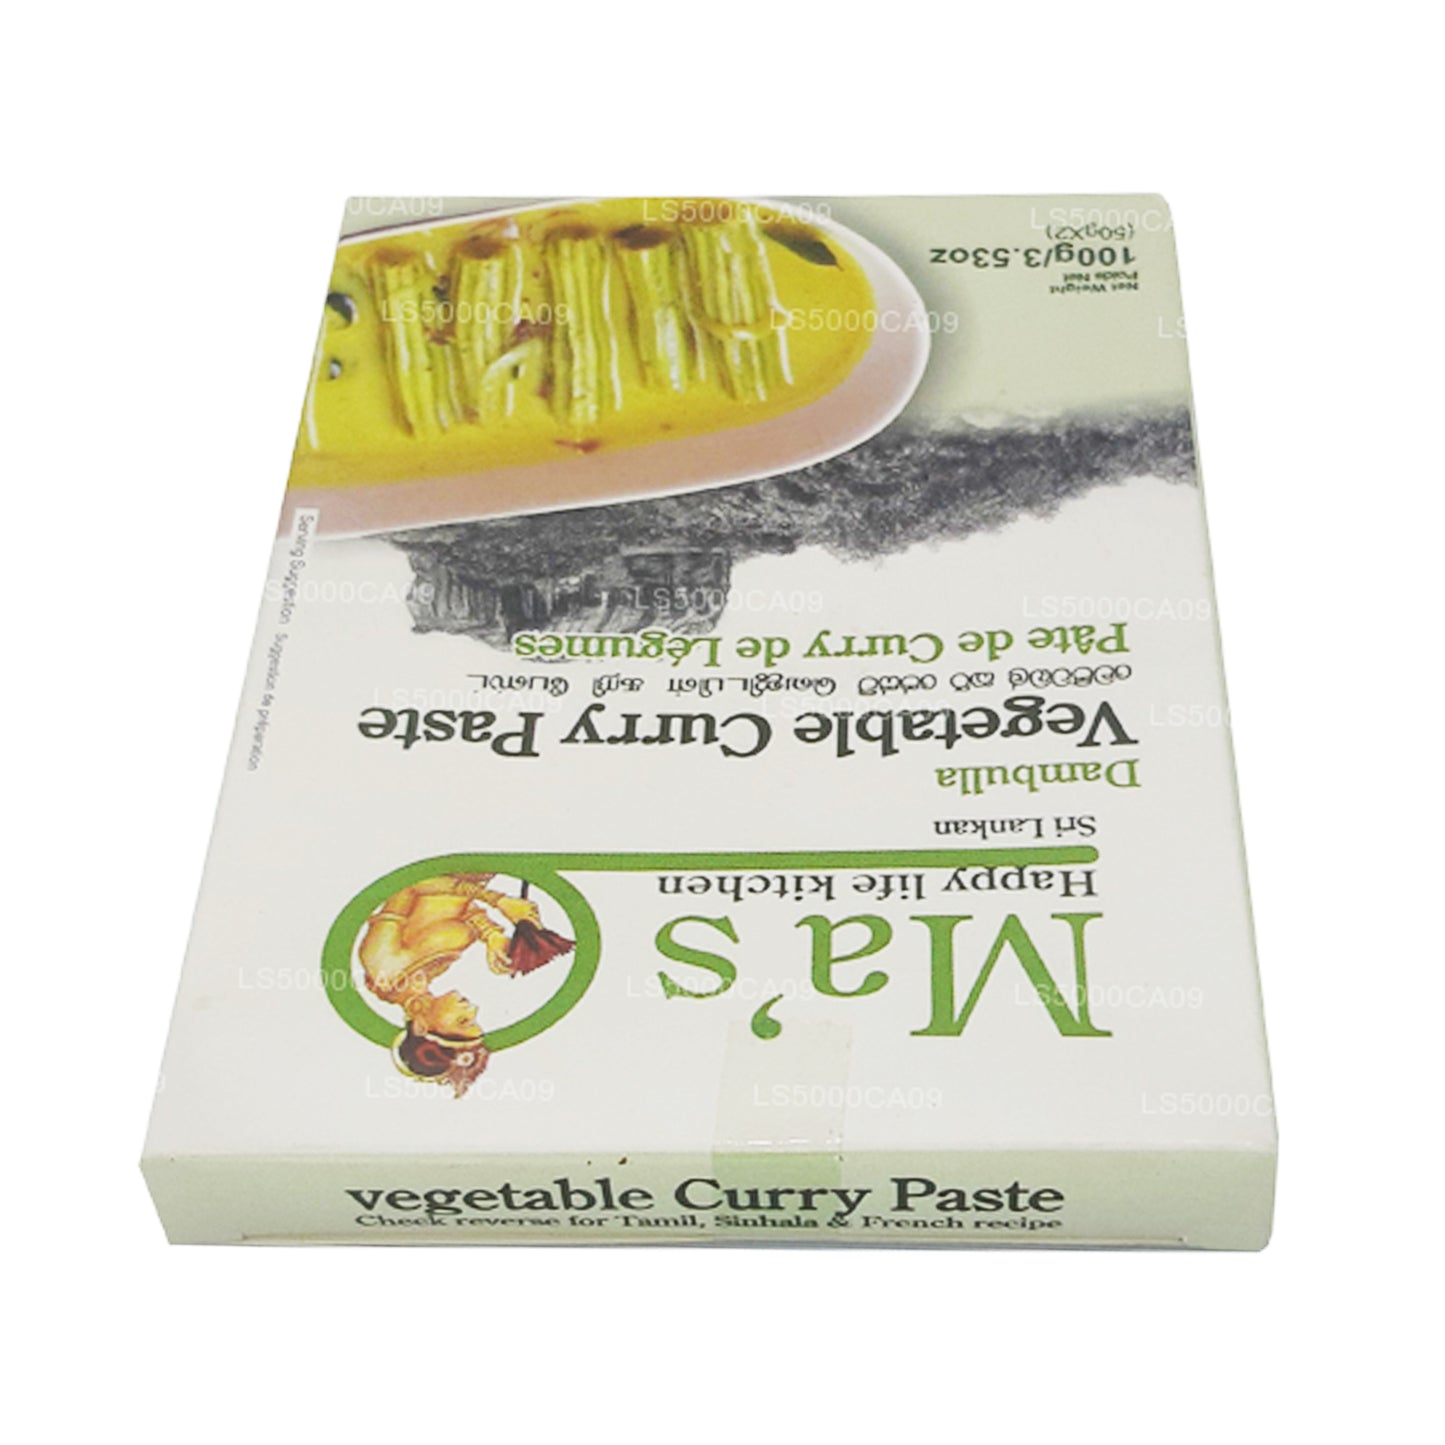 MA's Kitchen Gemüse-Curry-Paste (100g)